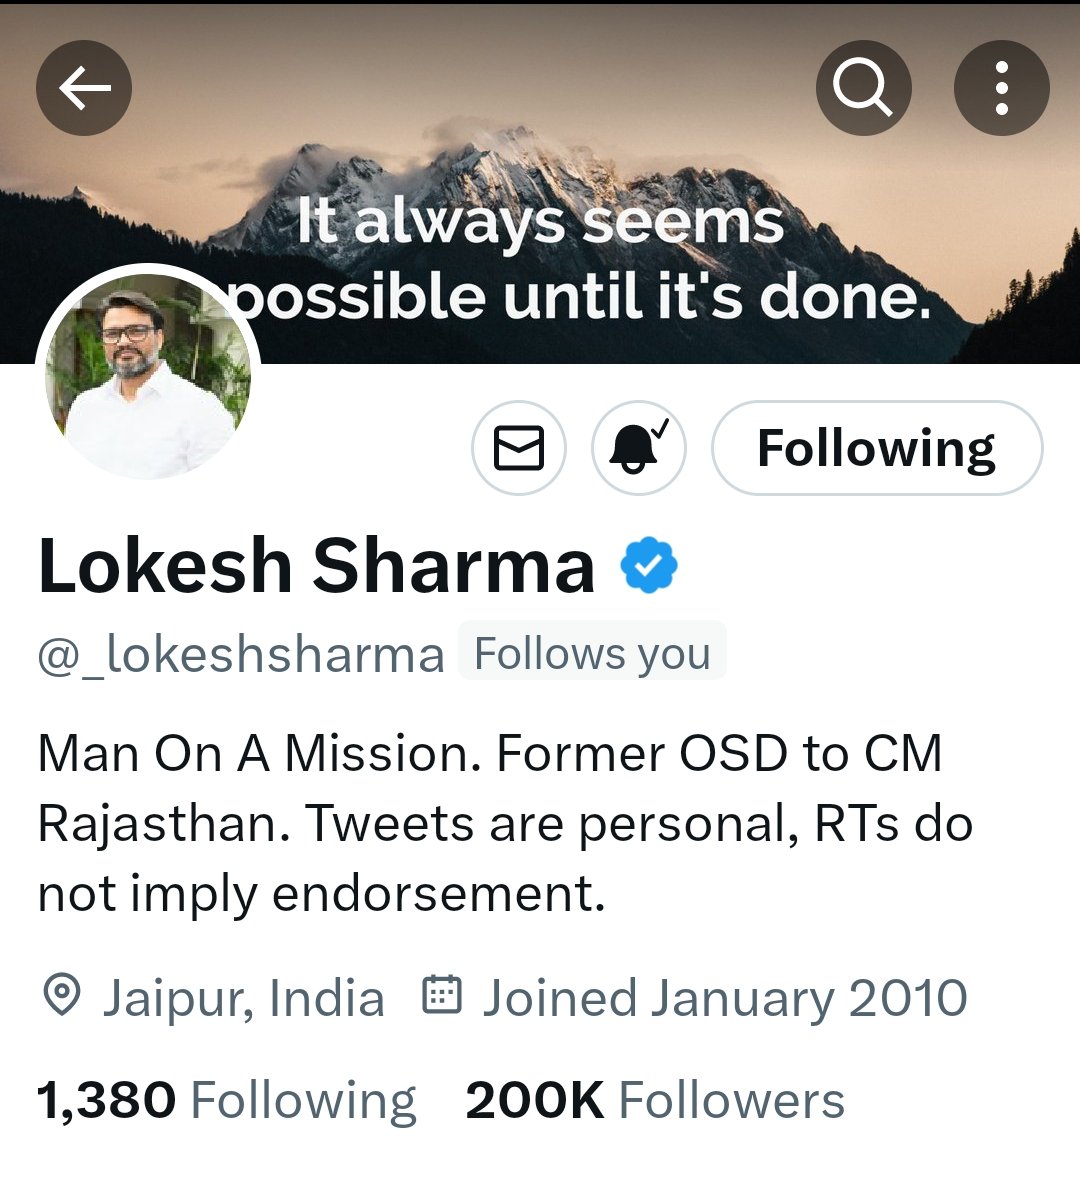 आदरणीय भाईसाब का #200K का परिवार होने पर हार्दिक बधाई एवं शुभकामनाएं 💐
@_lokeshsharma @_Team_LS 
#Lokeshsharma #TeamLokeshsharma